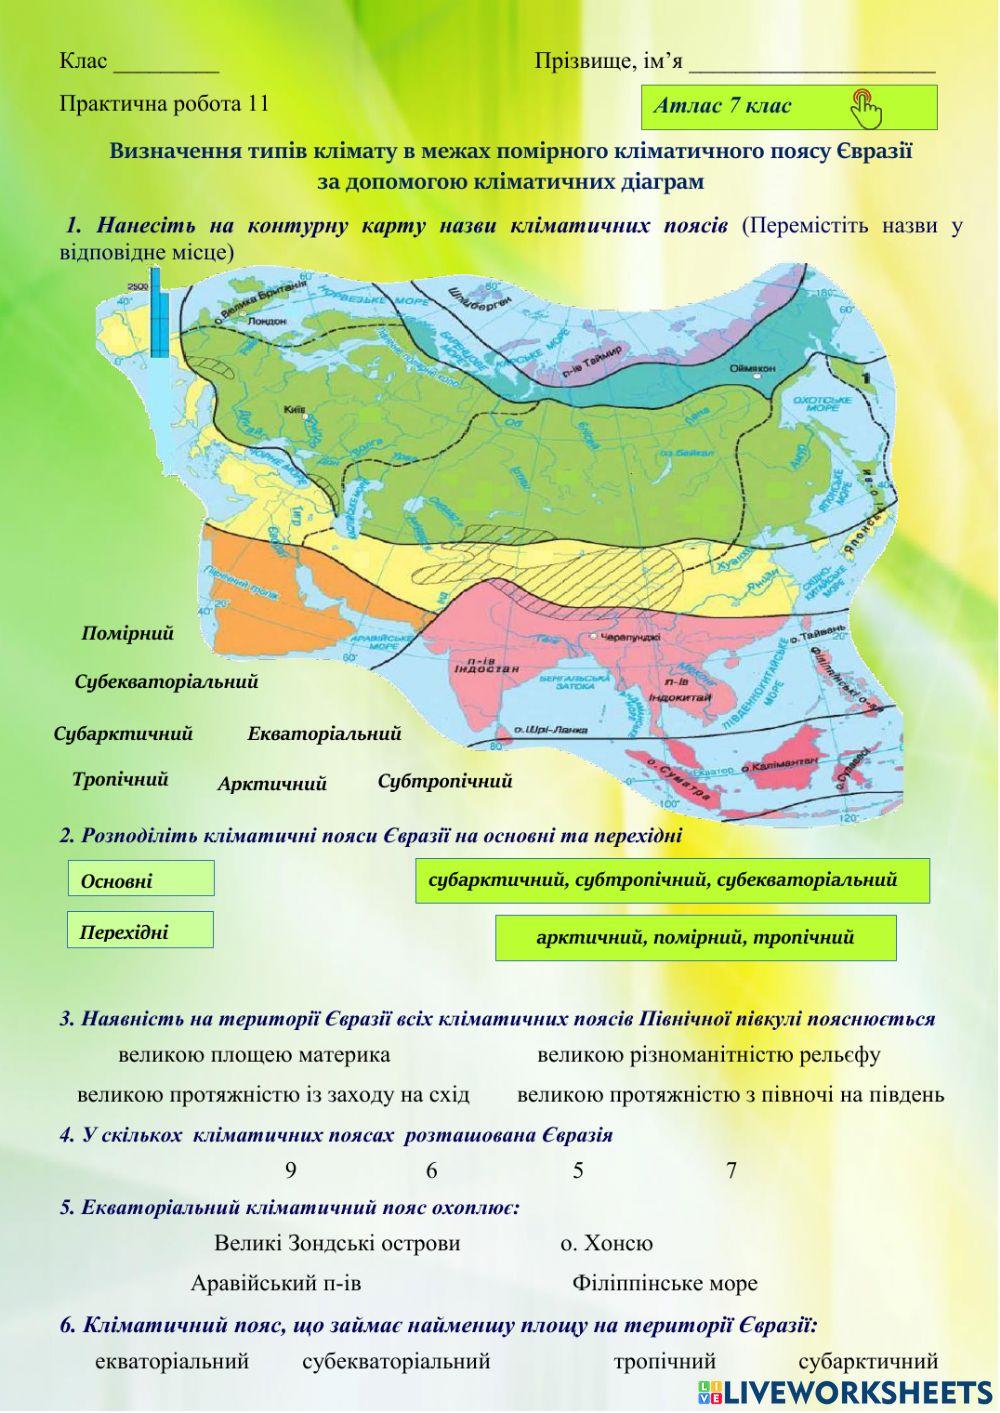 7 клас Визначення типів клімату в межах помірного кліматичного поясу Євразії  за допомогою кліматичних діаграм